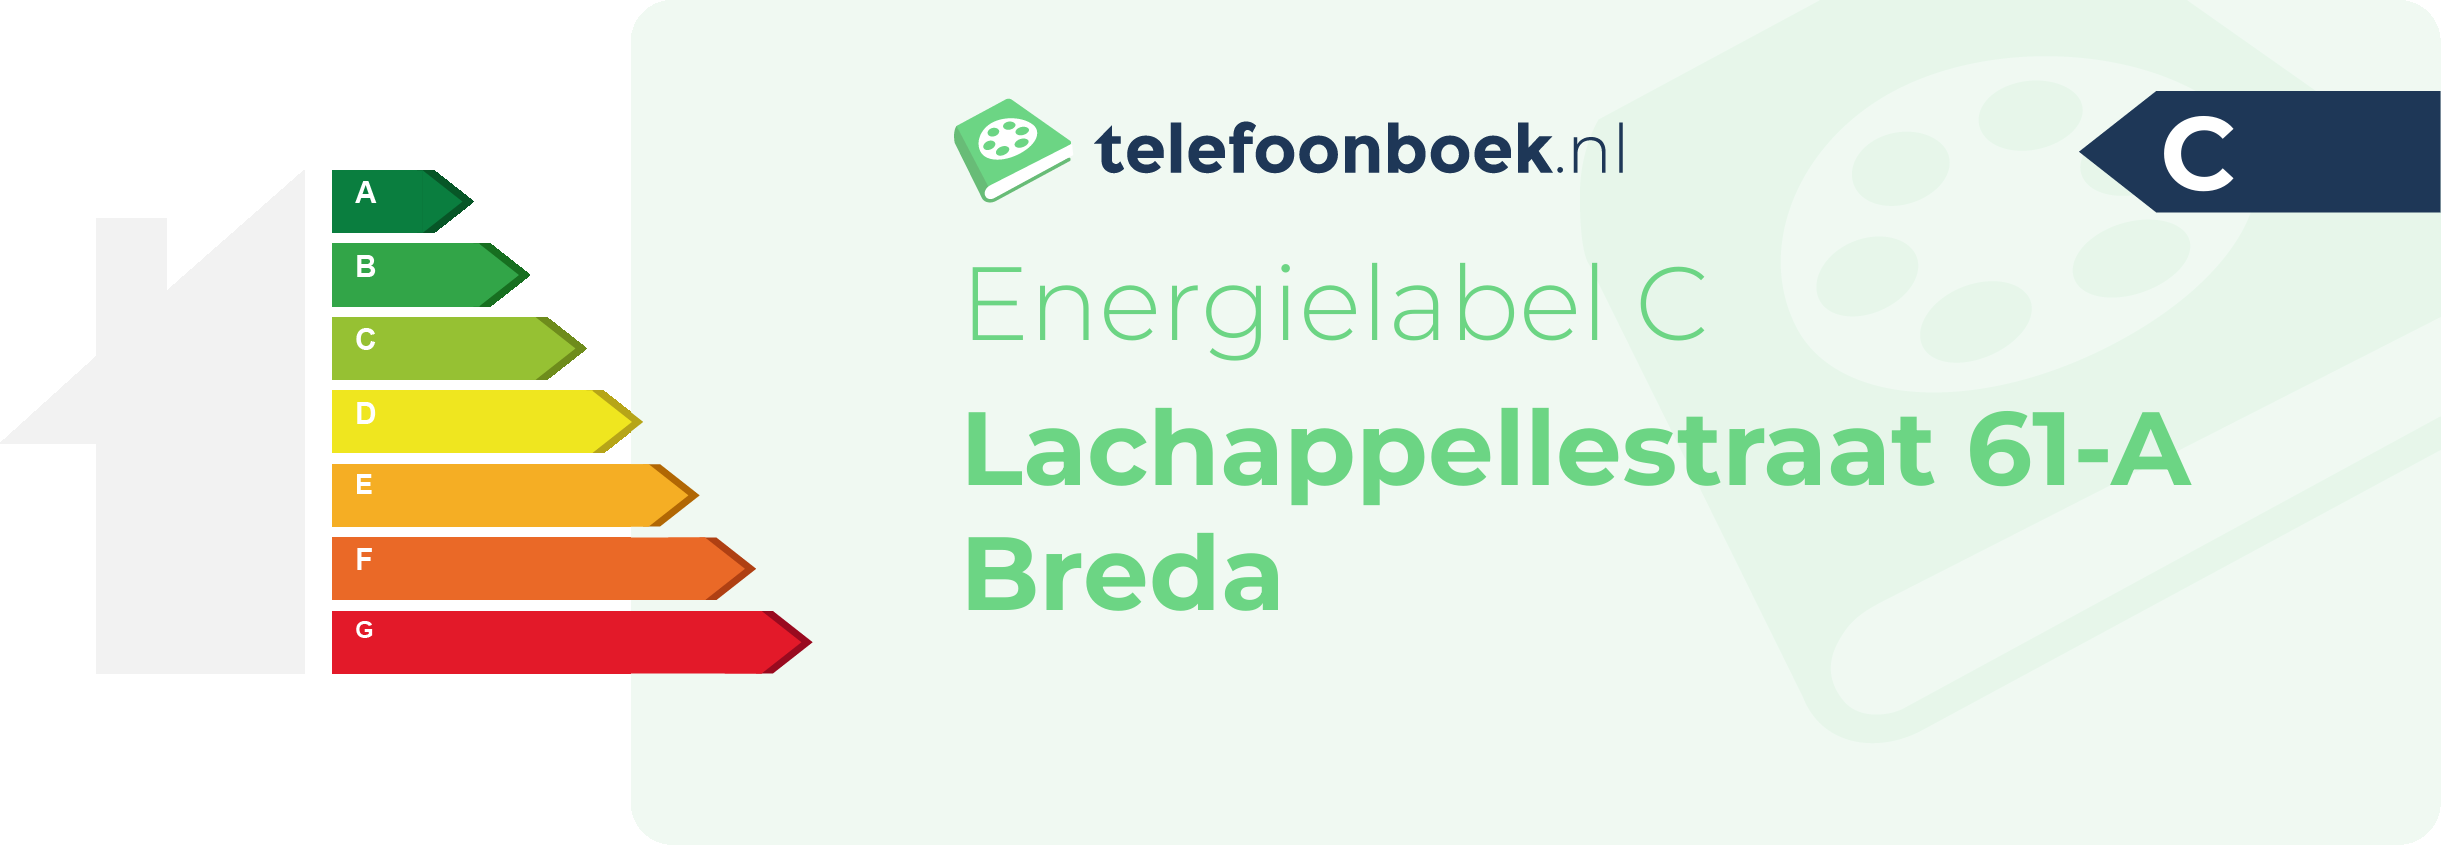 Energielabel Lachappellestraat 61-A Breda